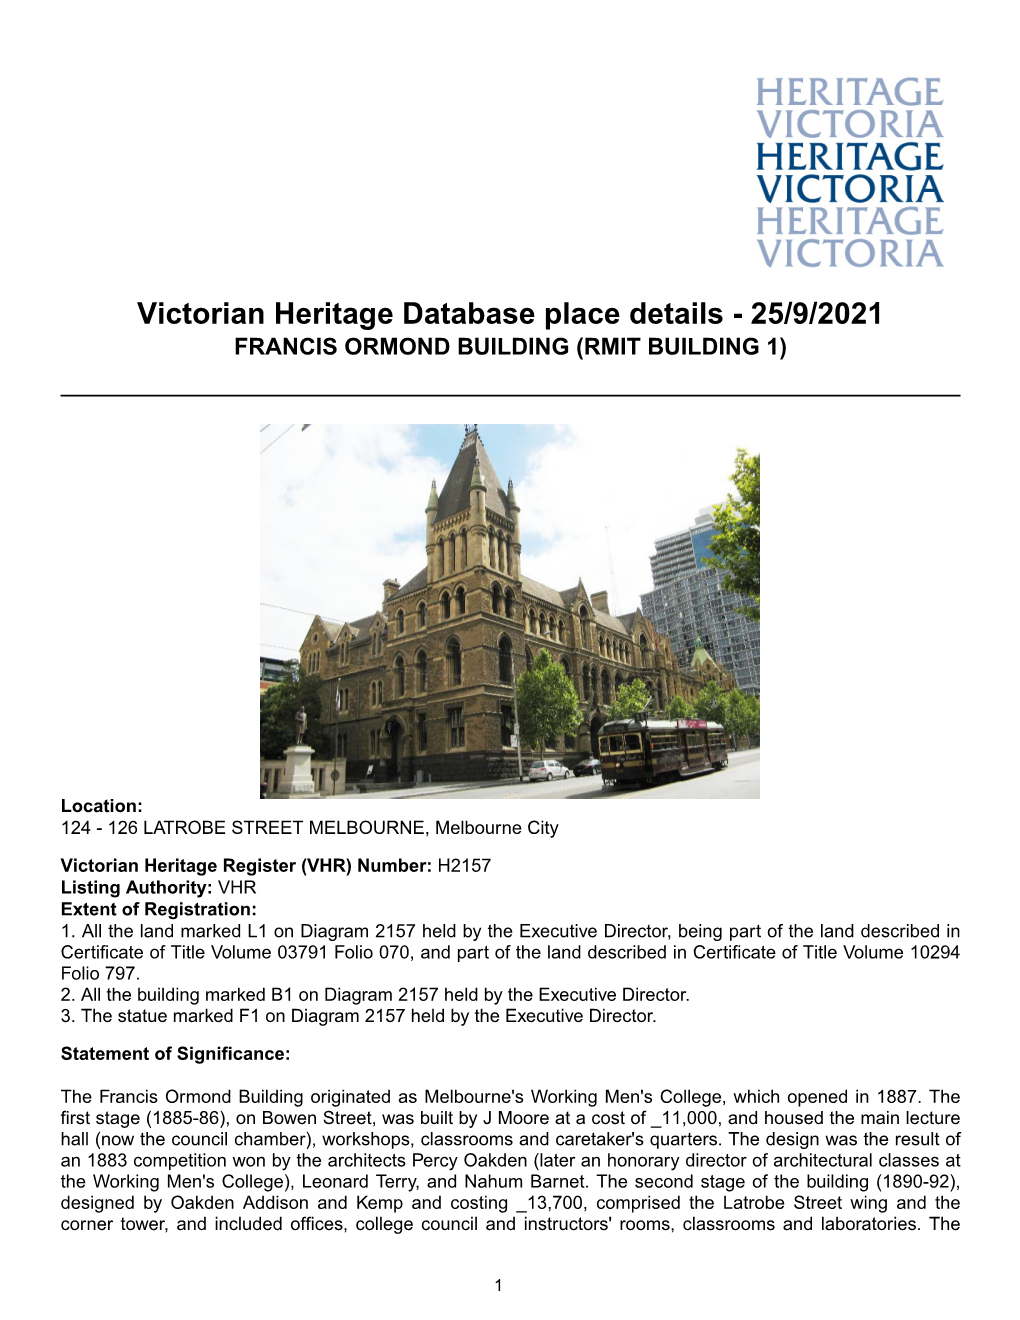 Victorian Heritage Database Place Details - 25/9/2021 FRANCIS ORMOND BUILDING (RMIT BUILDING 1)